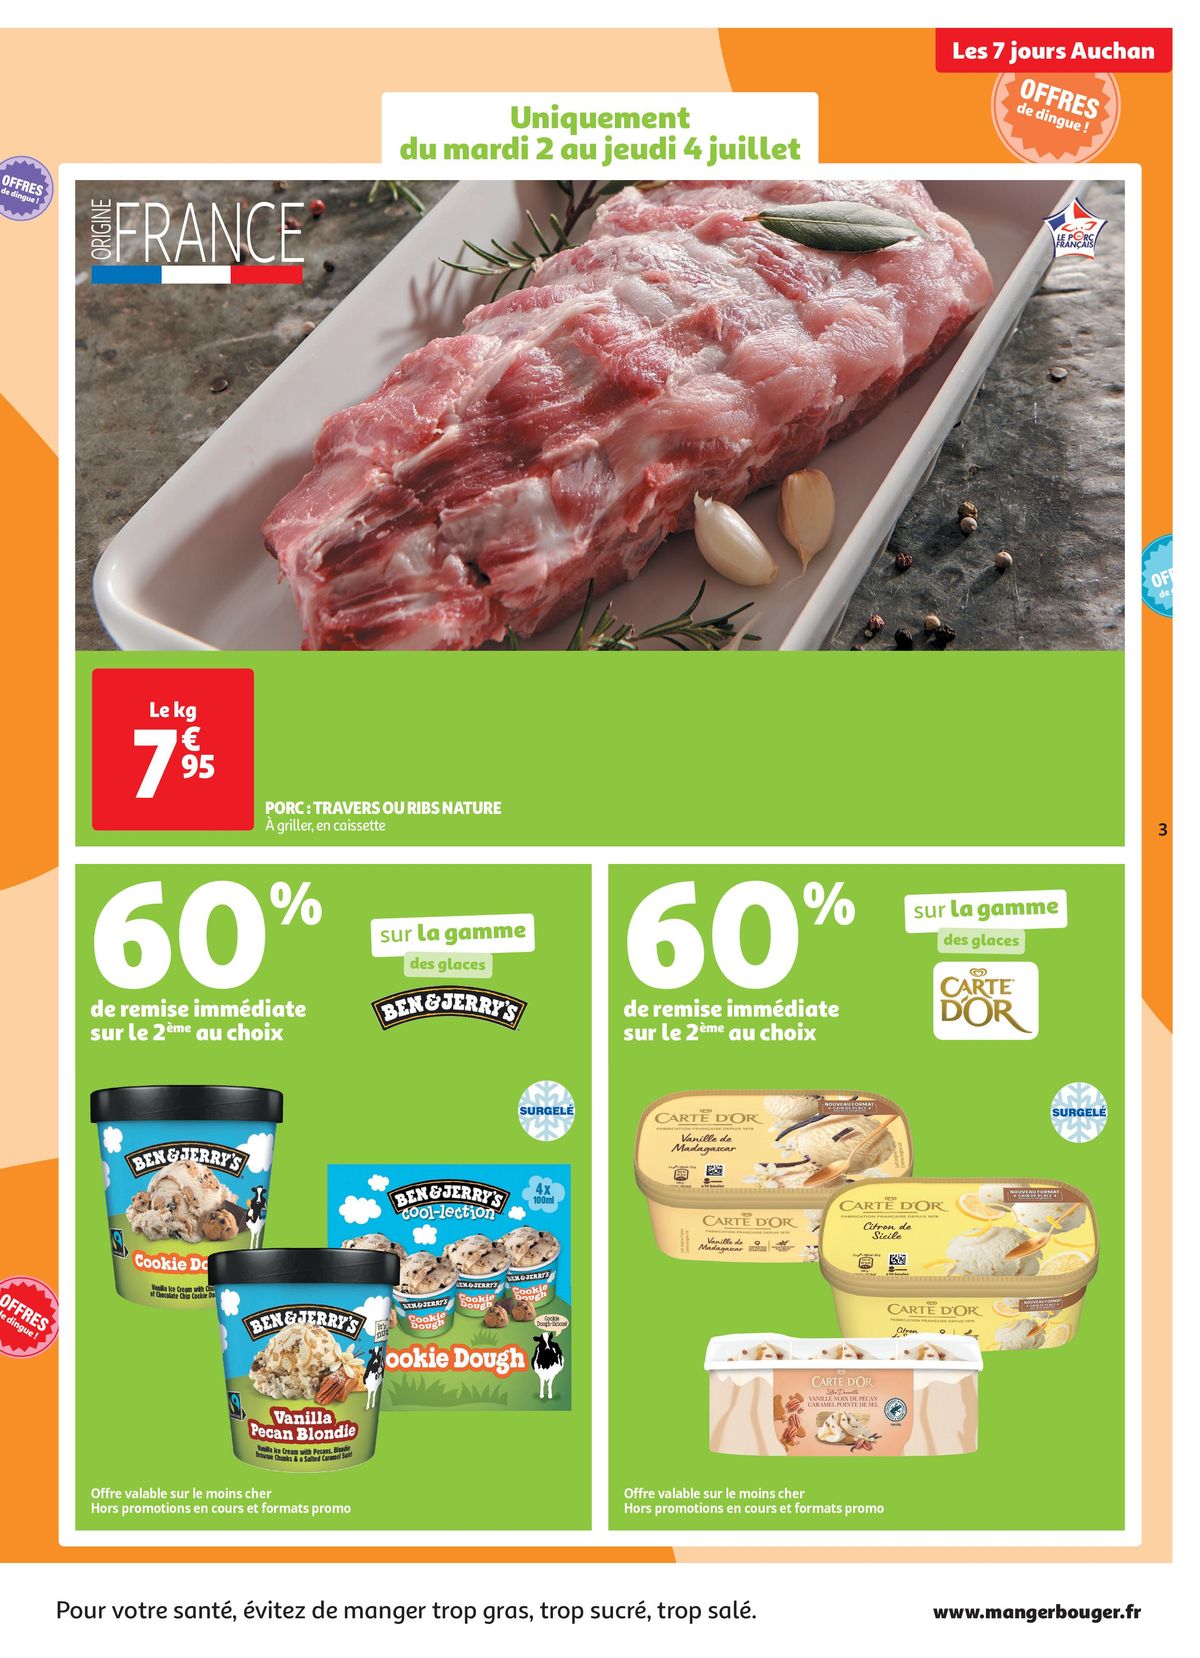 Catalogue C'est les 7 jours Auchan dans votre super !, page 00003